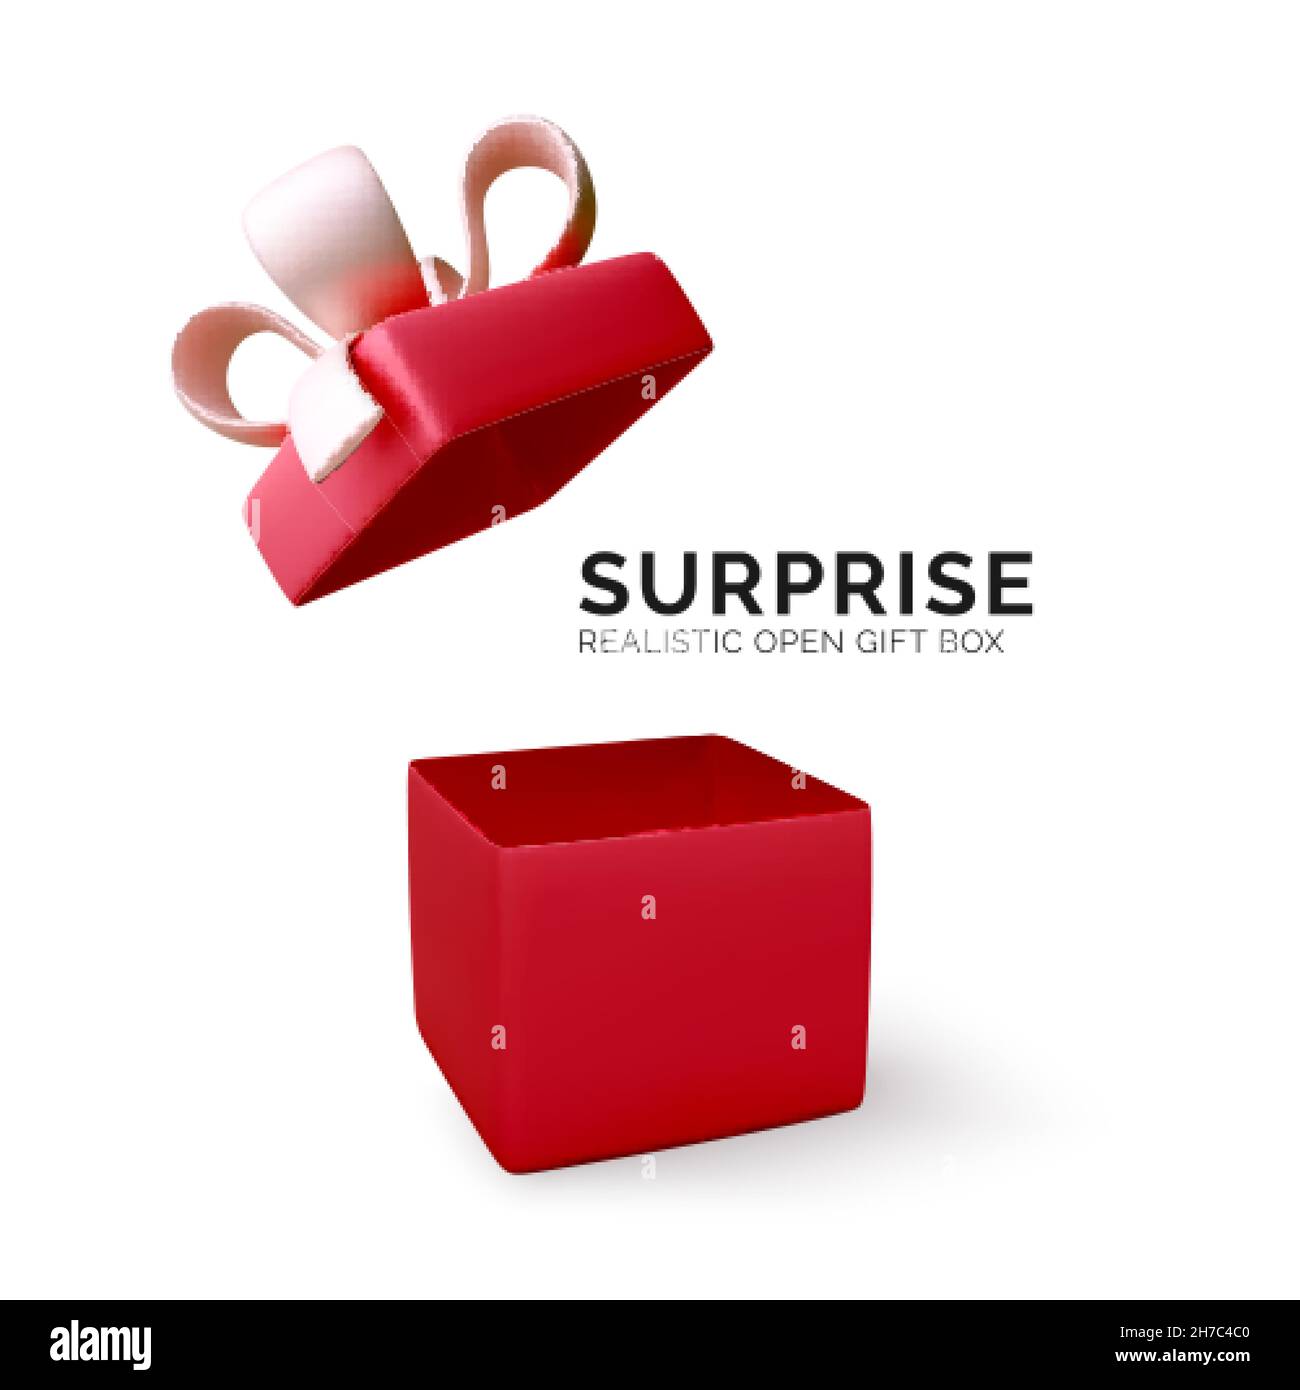 Geschenkbox. Rote realistische Geschenk- oder Überraschungskiste. 3D offene rote Geschenk-Box Dekoration Design-Element. Weihnachtsbanner mit offener Box. Vektorgrafik Stock Vektor